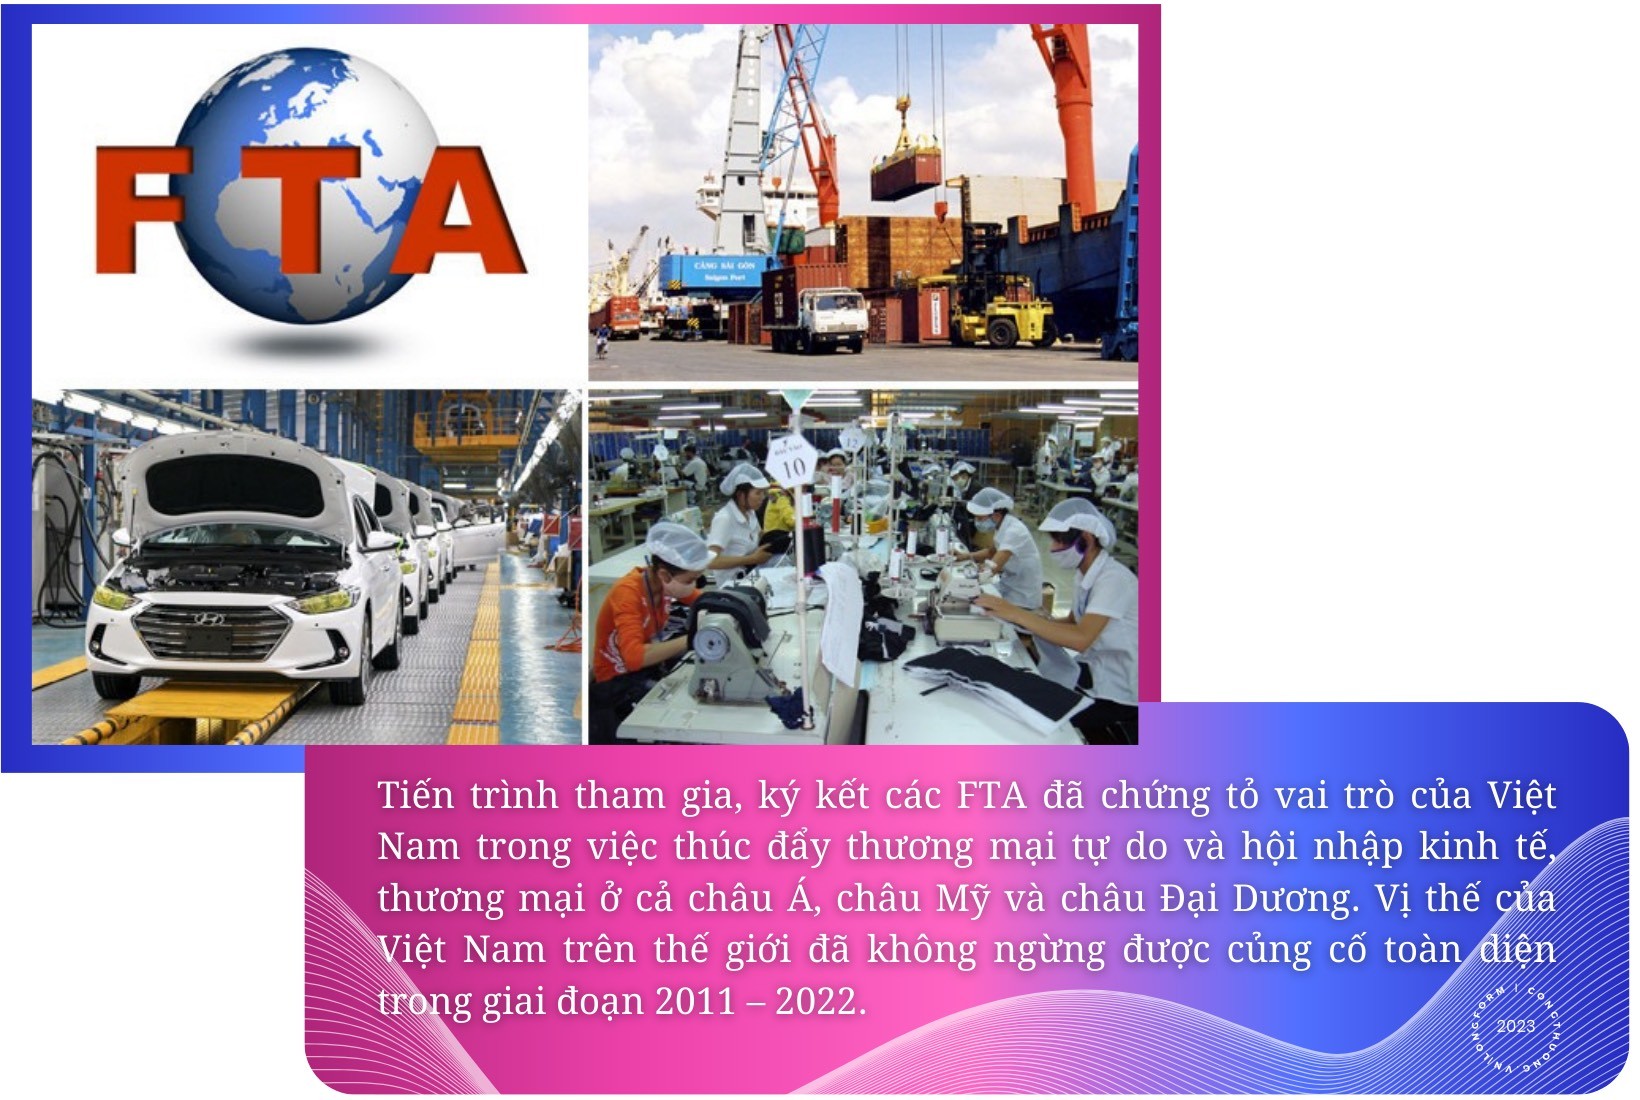 Longform | FTA - Khẳng định vị thế của Việt Nam trên “sân chơi” kinh tế toàn cầu